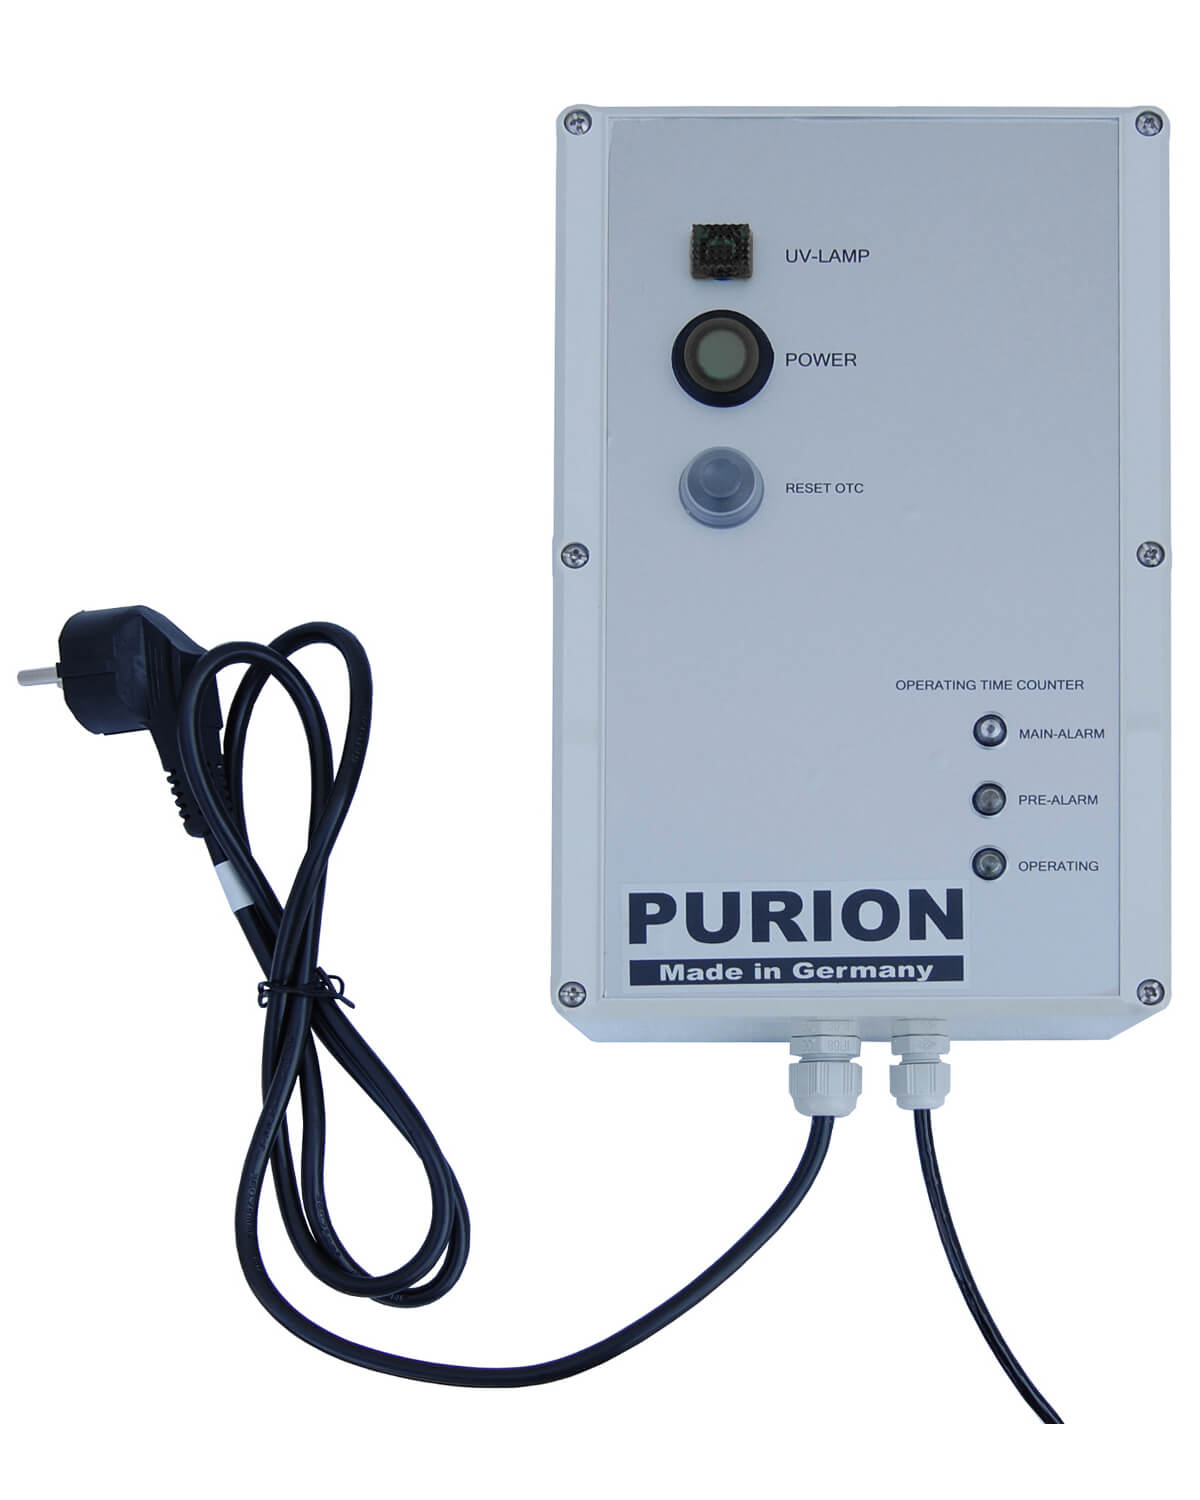 PURION 1000 H OTC Bundle, entwickelt von der PURION GmbH, ist eine stromsparende Desinfektionslösung, die Legionellen durch UV-C-Desinfektionstechnologie effektiv beseitigt.